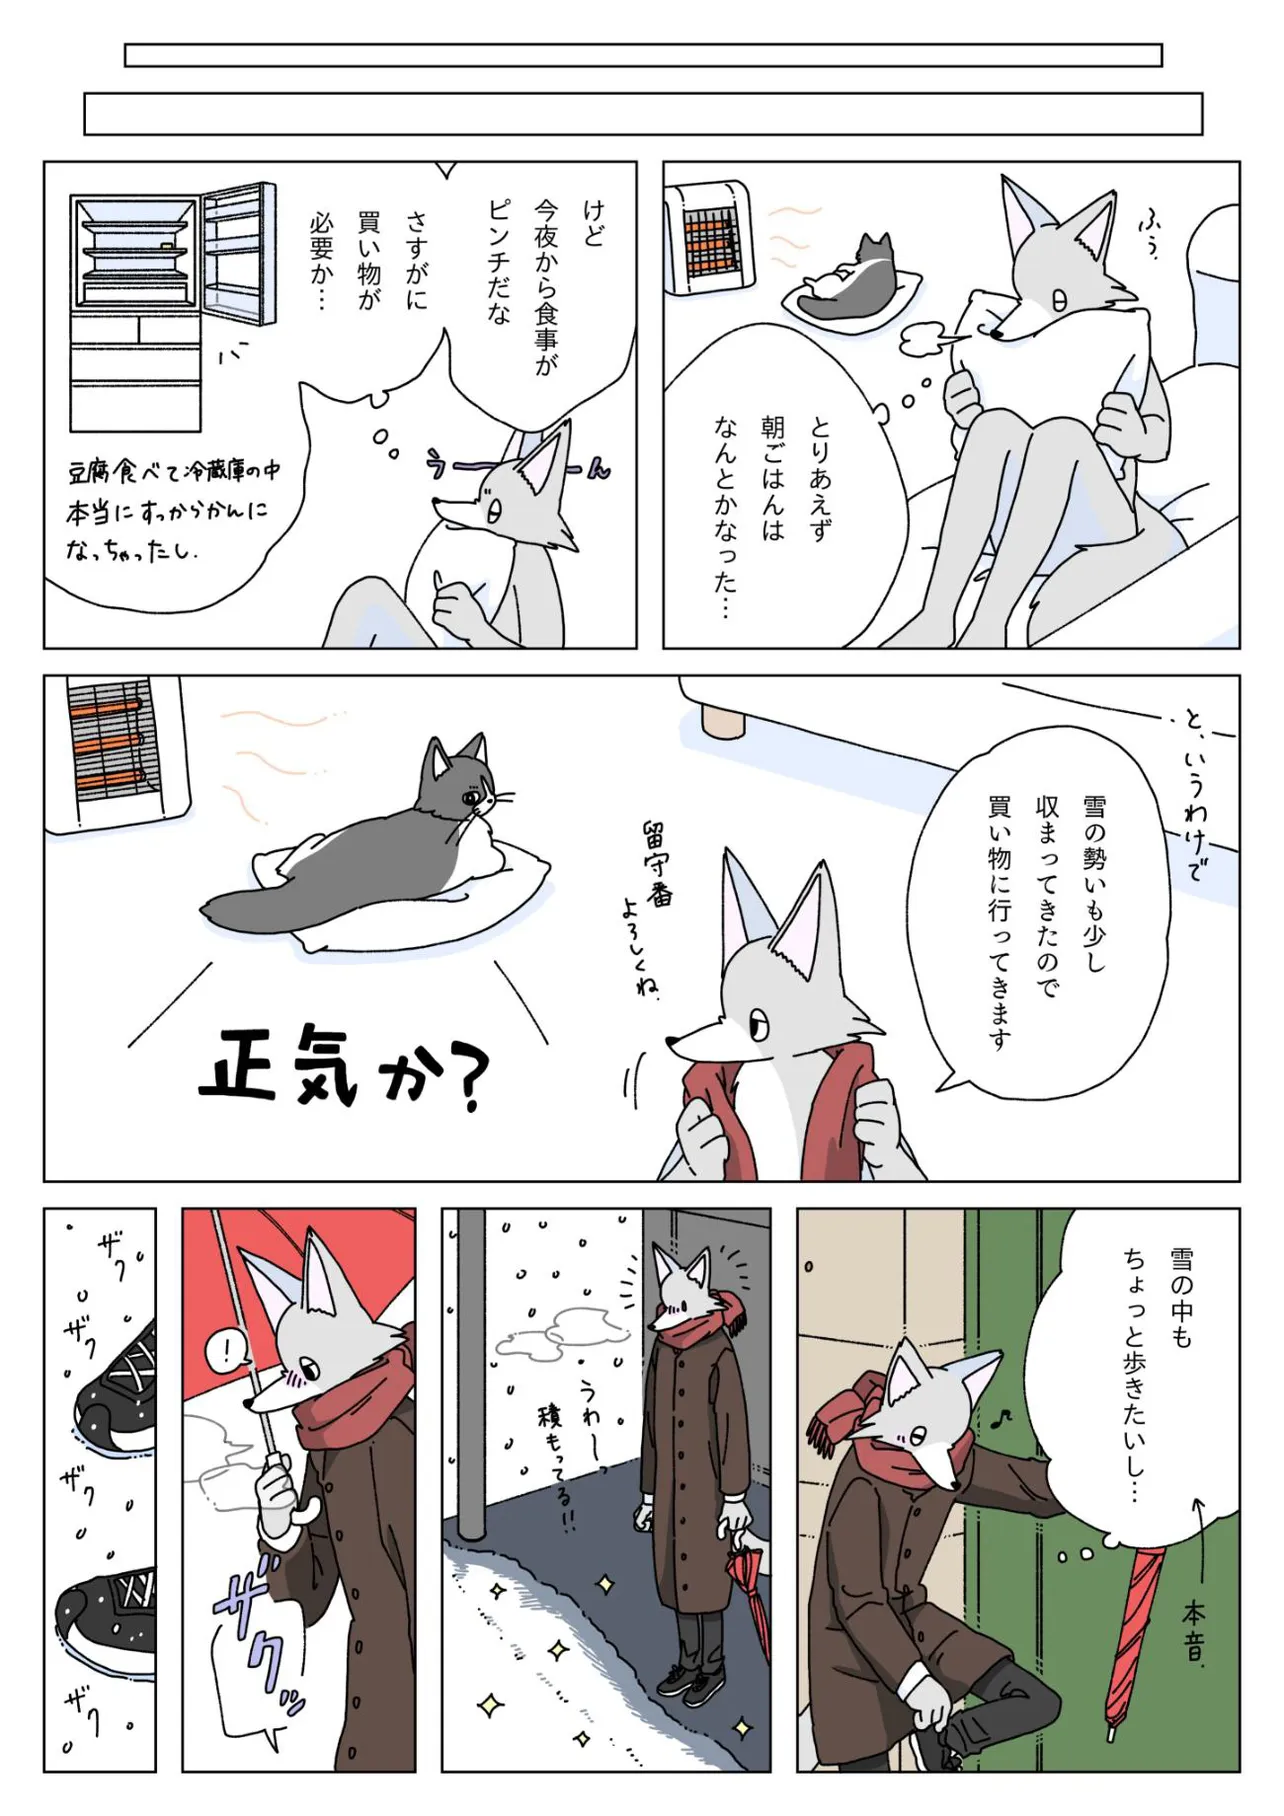 『大雪の日に豆腐を食べる話』(9／12)